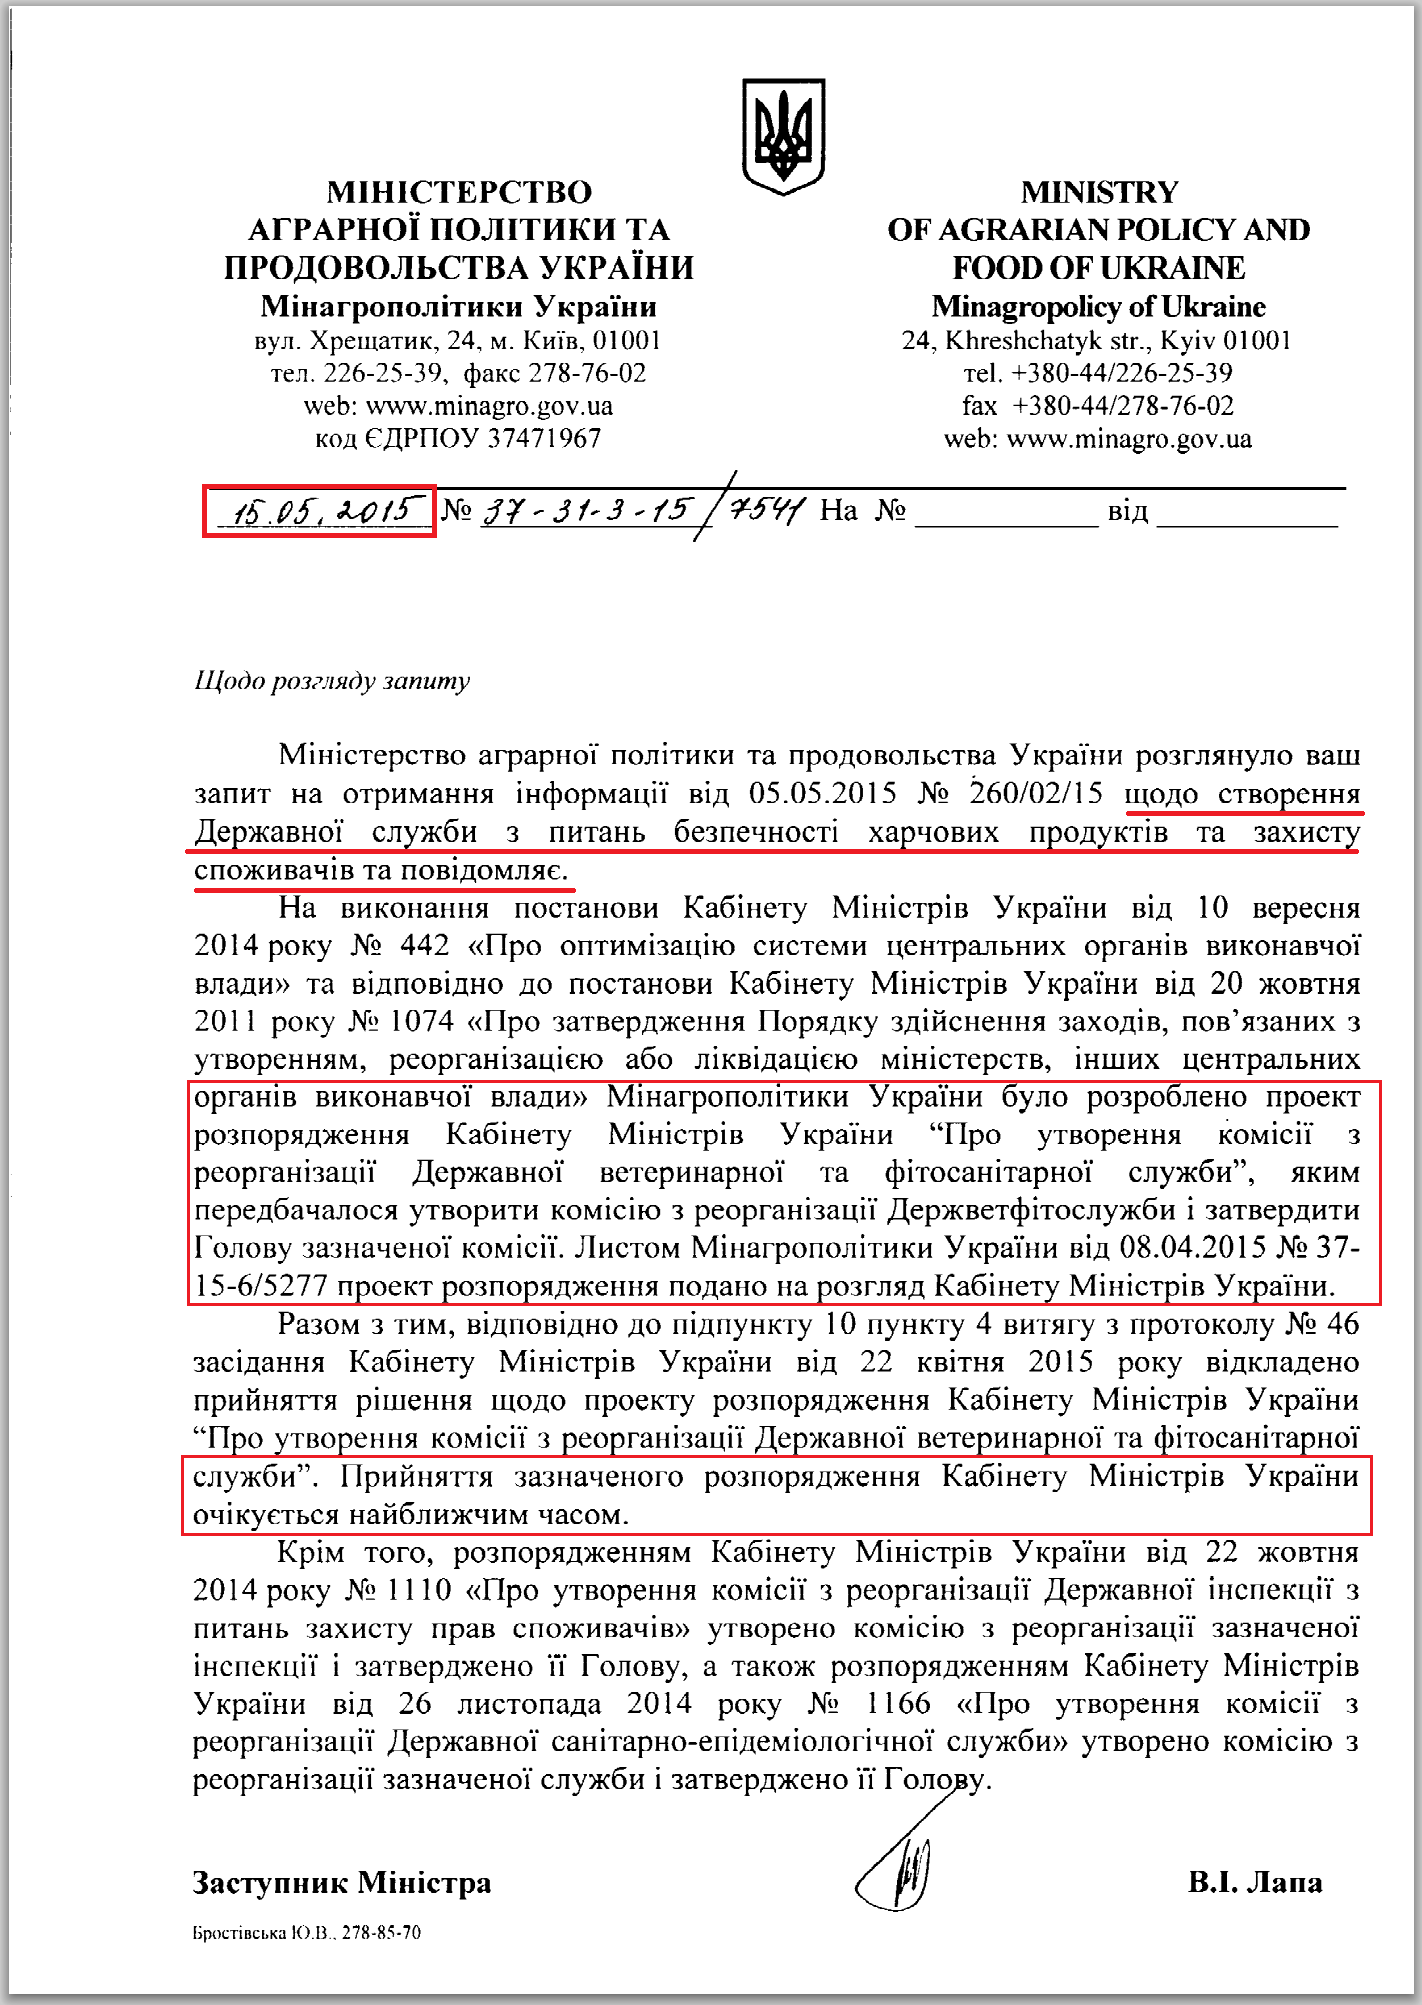 лист міністерства аграрної політики та продовольства України від 15.05.2015